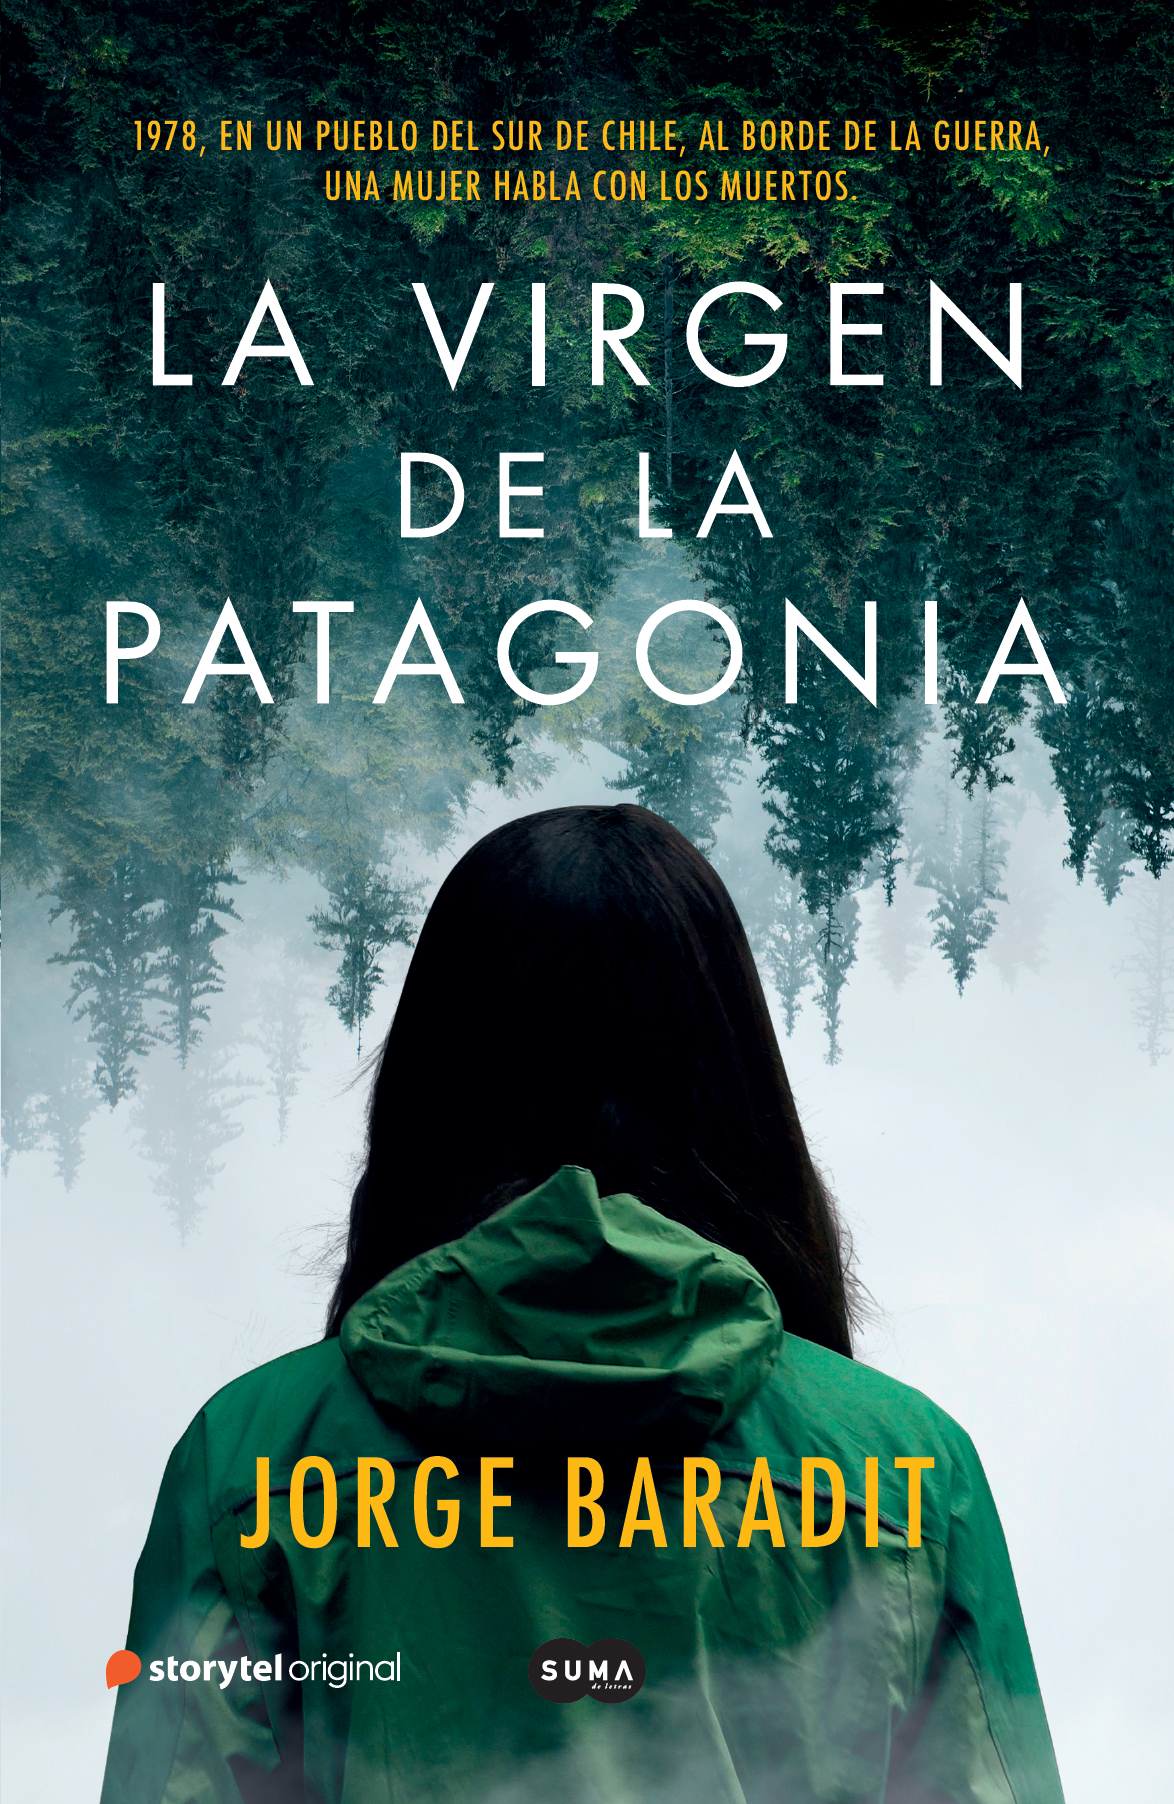 La imagen muestra a una mujer de espaldas frente a un bosque